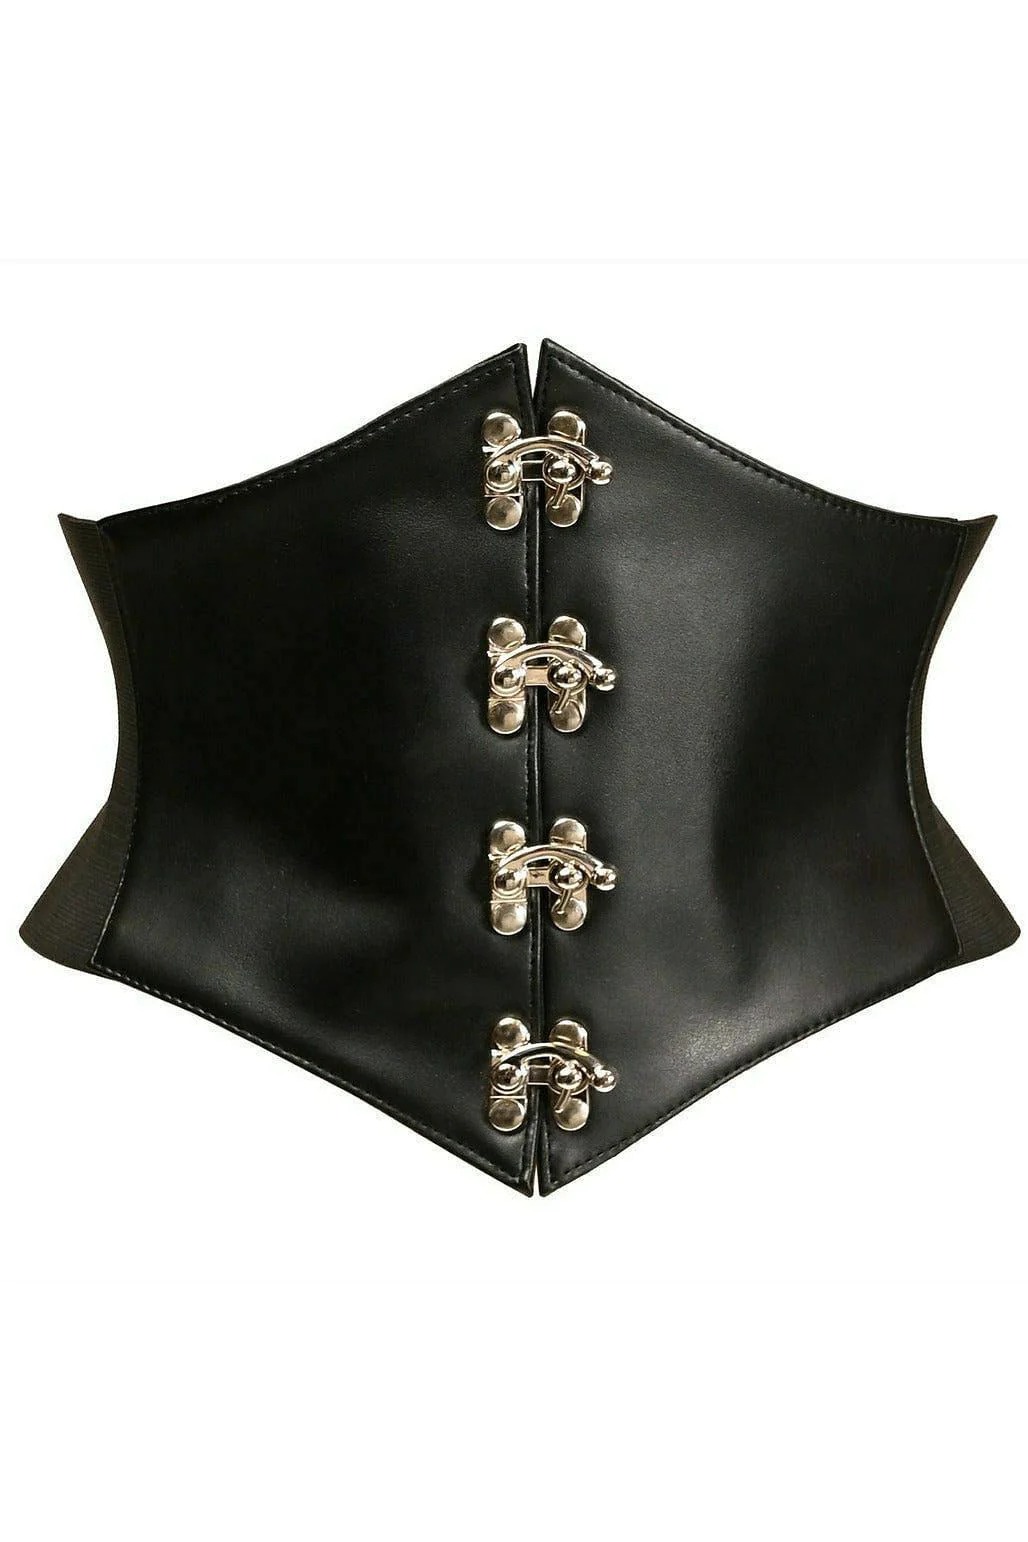 Adult Plus Size Black Faux Leather Corset Belt Cincher, $47.99